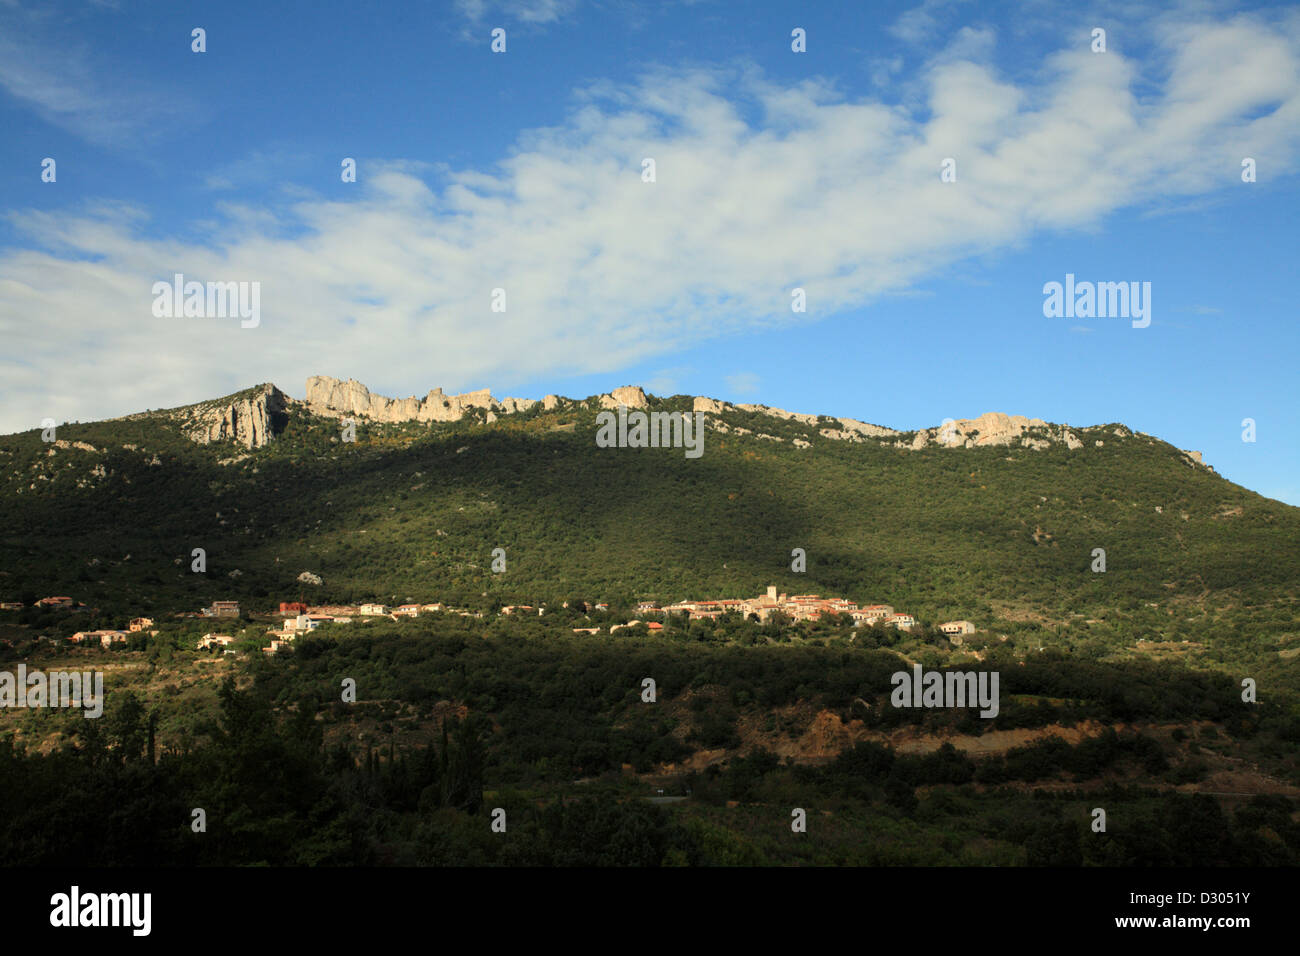 Peyrepertuse eines der Katharer-Burgen in den Pyrenäen an der Grenze von Frankreich und Spanien. Stockfoto